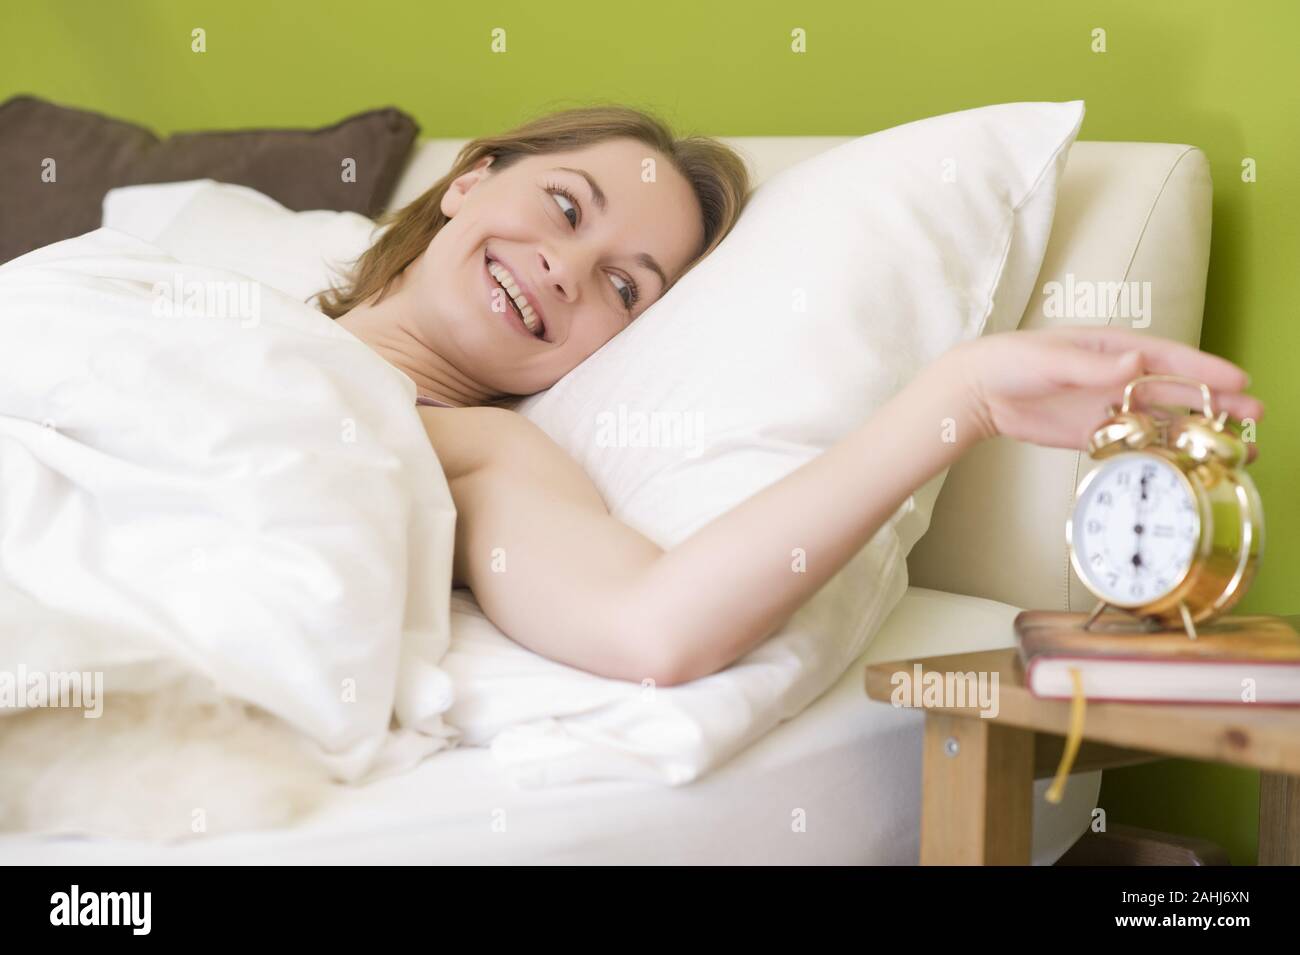 25 -30 jährige Frau schläft im Bett, zeigt ihre Füsse, MR:Yes Stock Photo